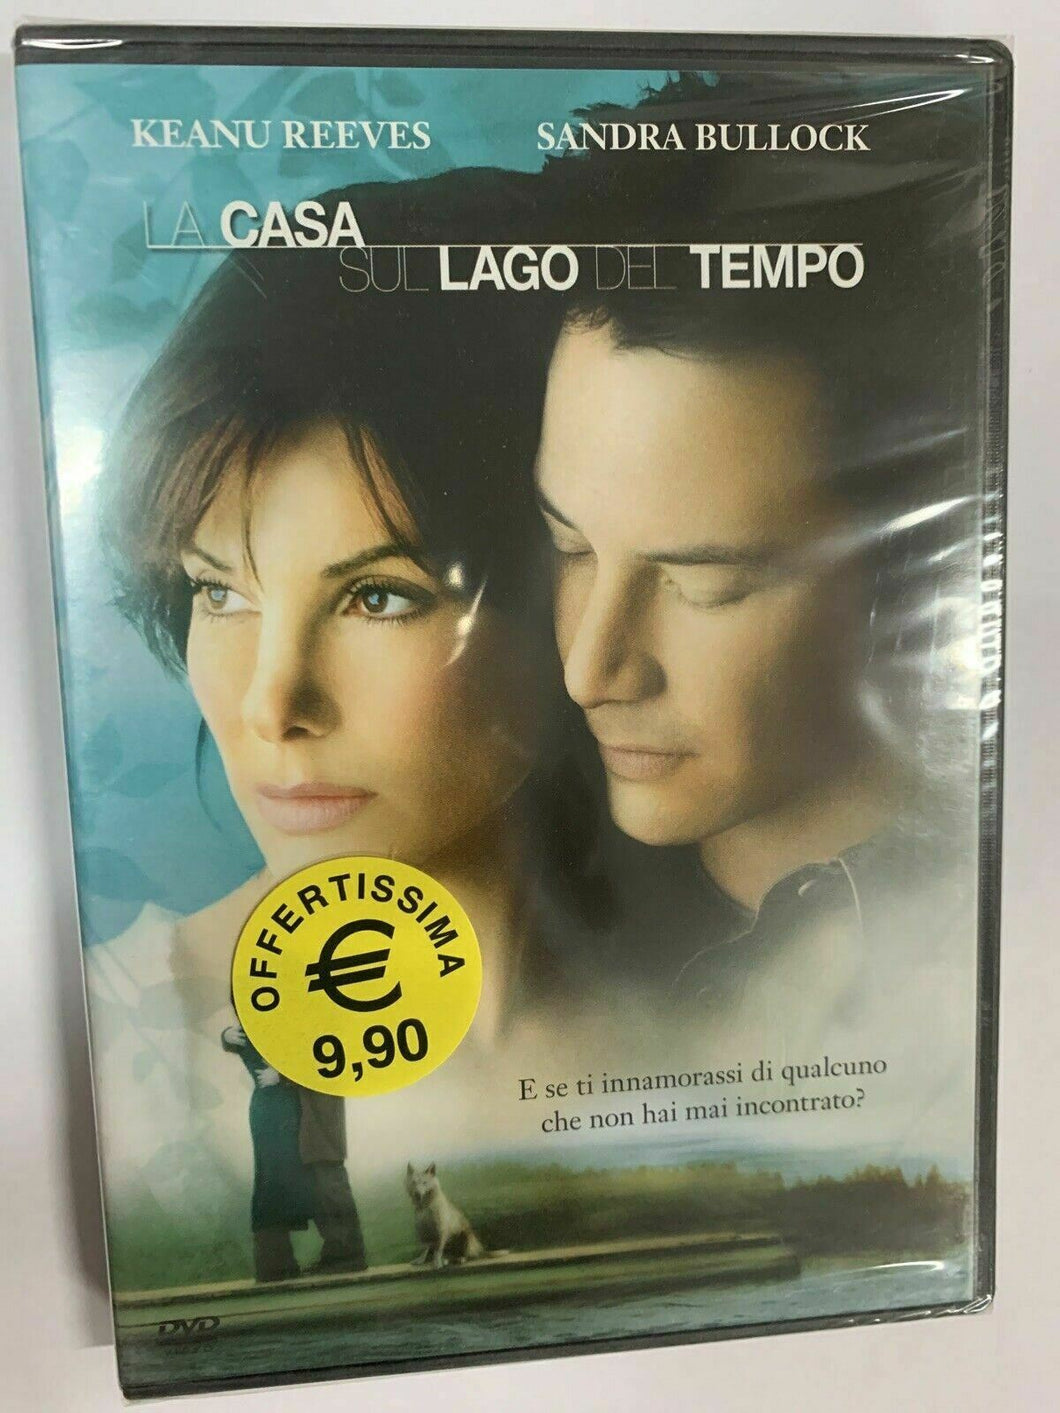 La casa sul lago del tempo (2006) DVD